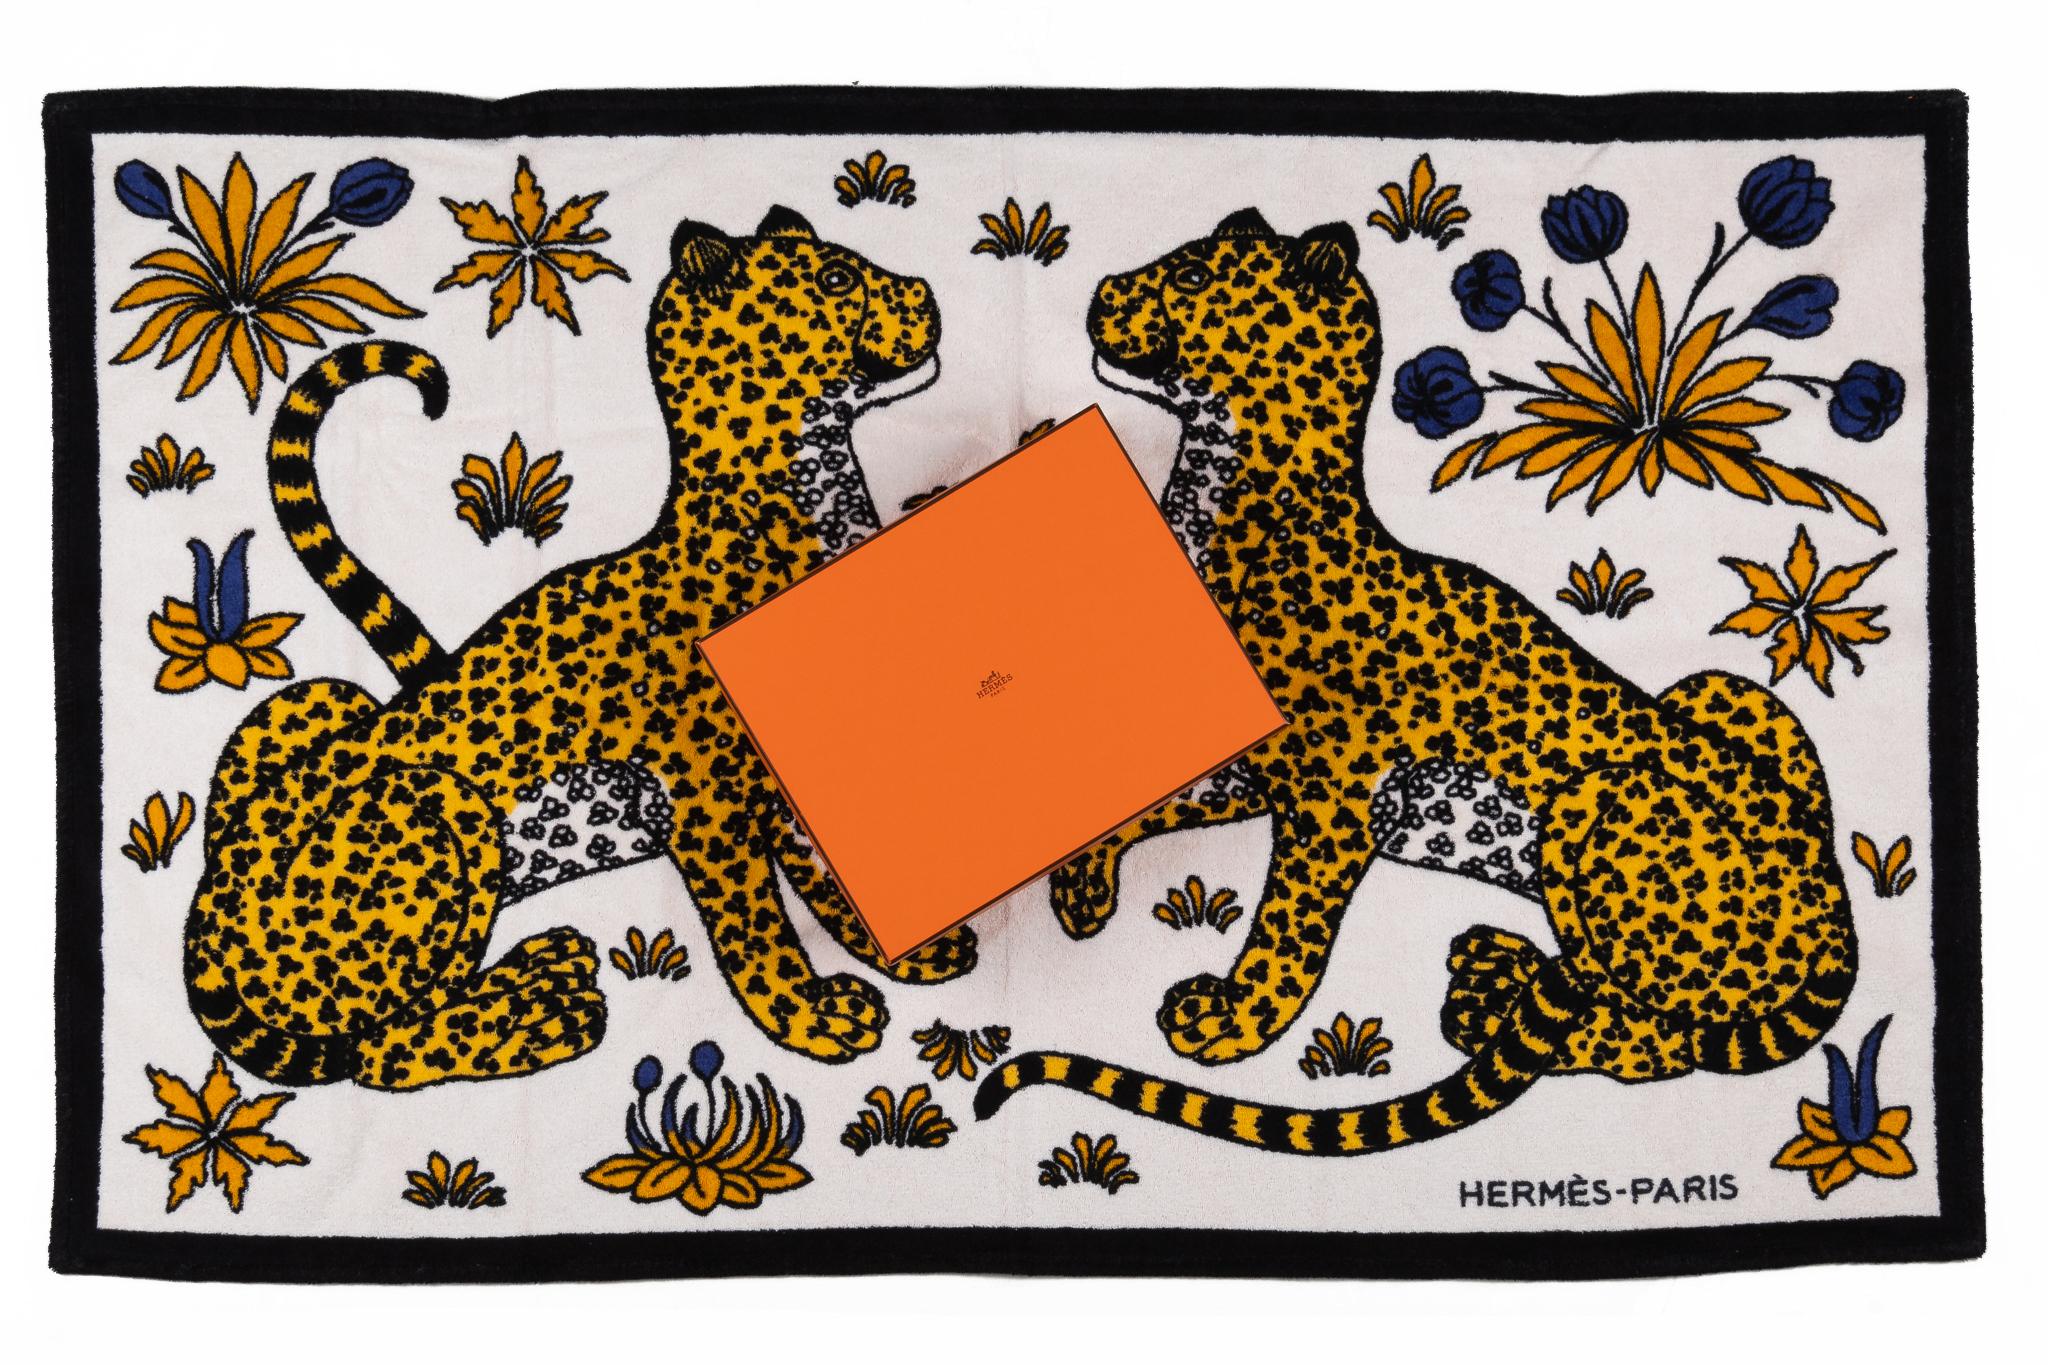 Hermès guepards Strandtuch in Weiß und Schwarz. Das Muster zeigt zwei gelbe Leoparden, die sich gegenüberstehen. Der Artikel ist neu und kommt mit der Box.